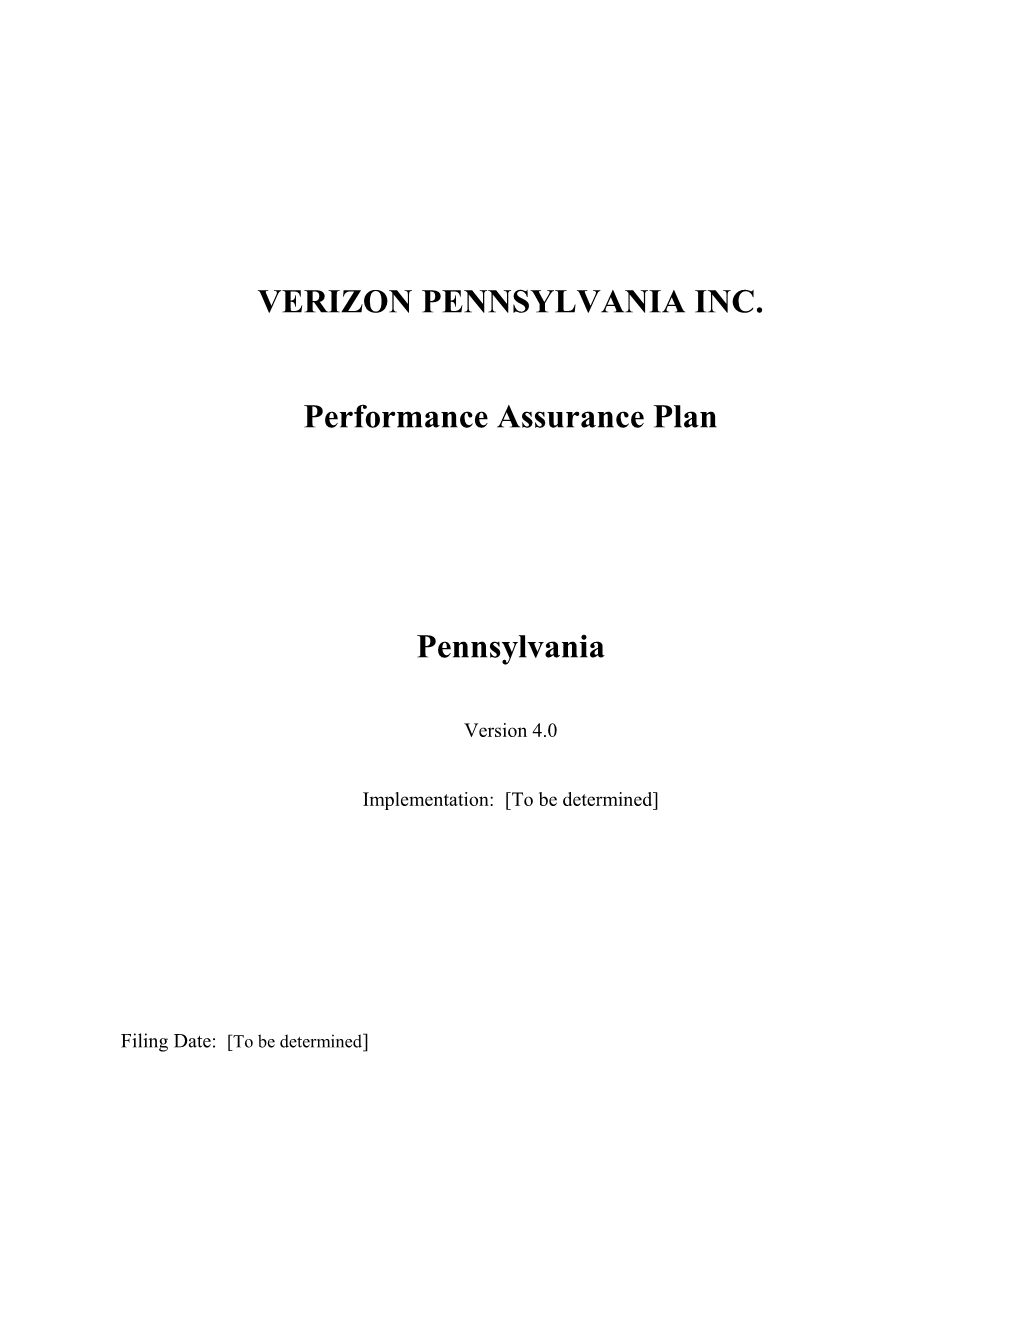 Verizon Pennsylvania Inc